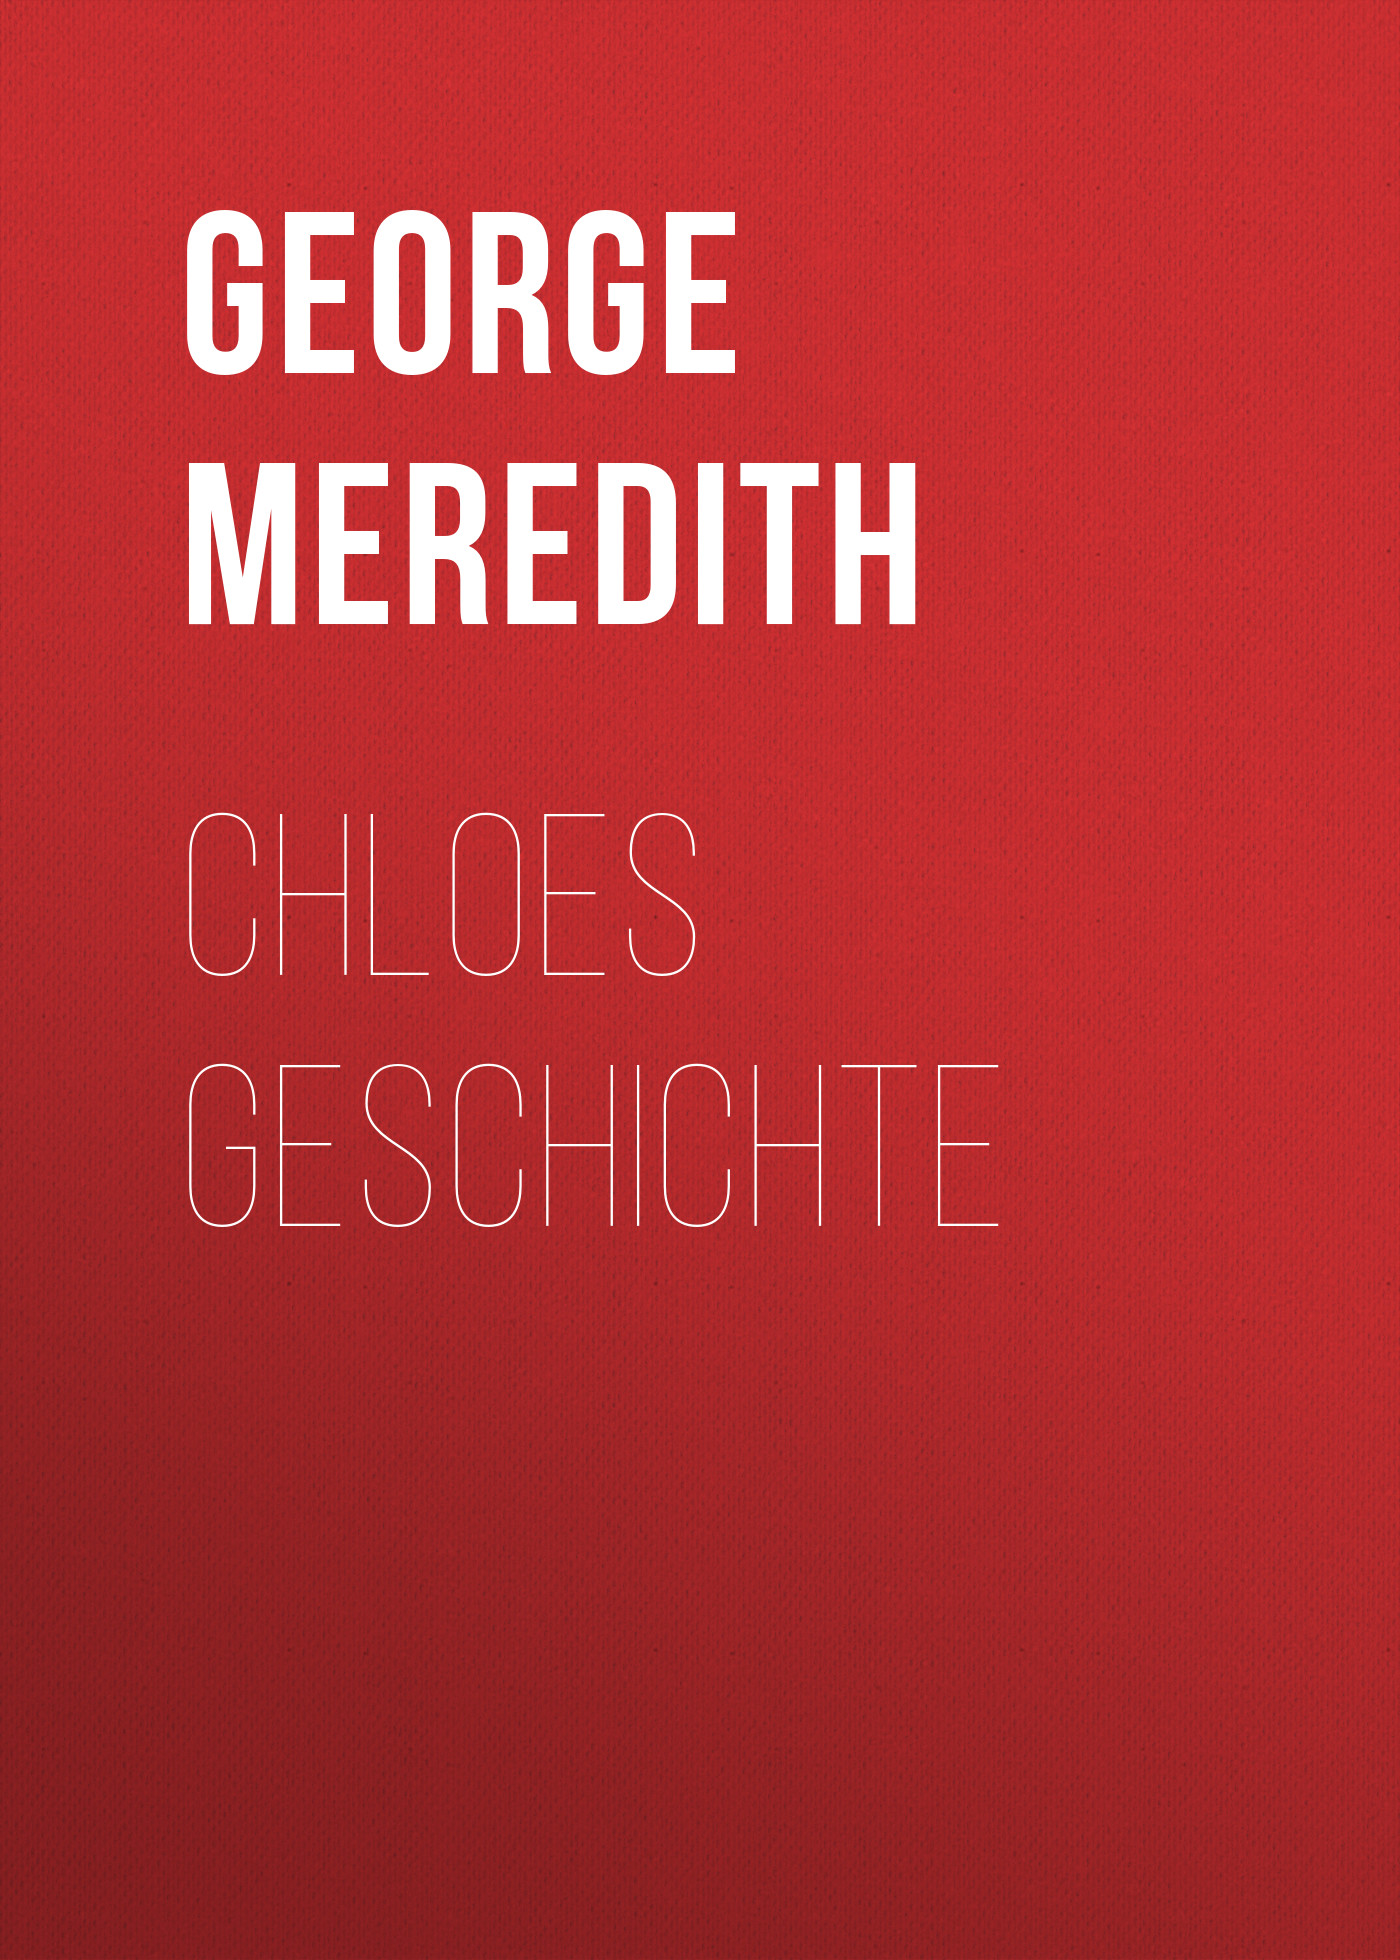 Книга Chloes Geschichte из серии , созданная George Meredith, может относится к жанру Зарубежная классика. Стоимость электронной книги Chloes Geschichte с идентификатором 48633316 составляет 0 руб.